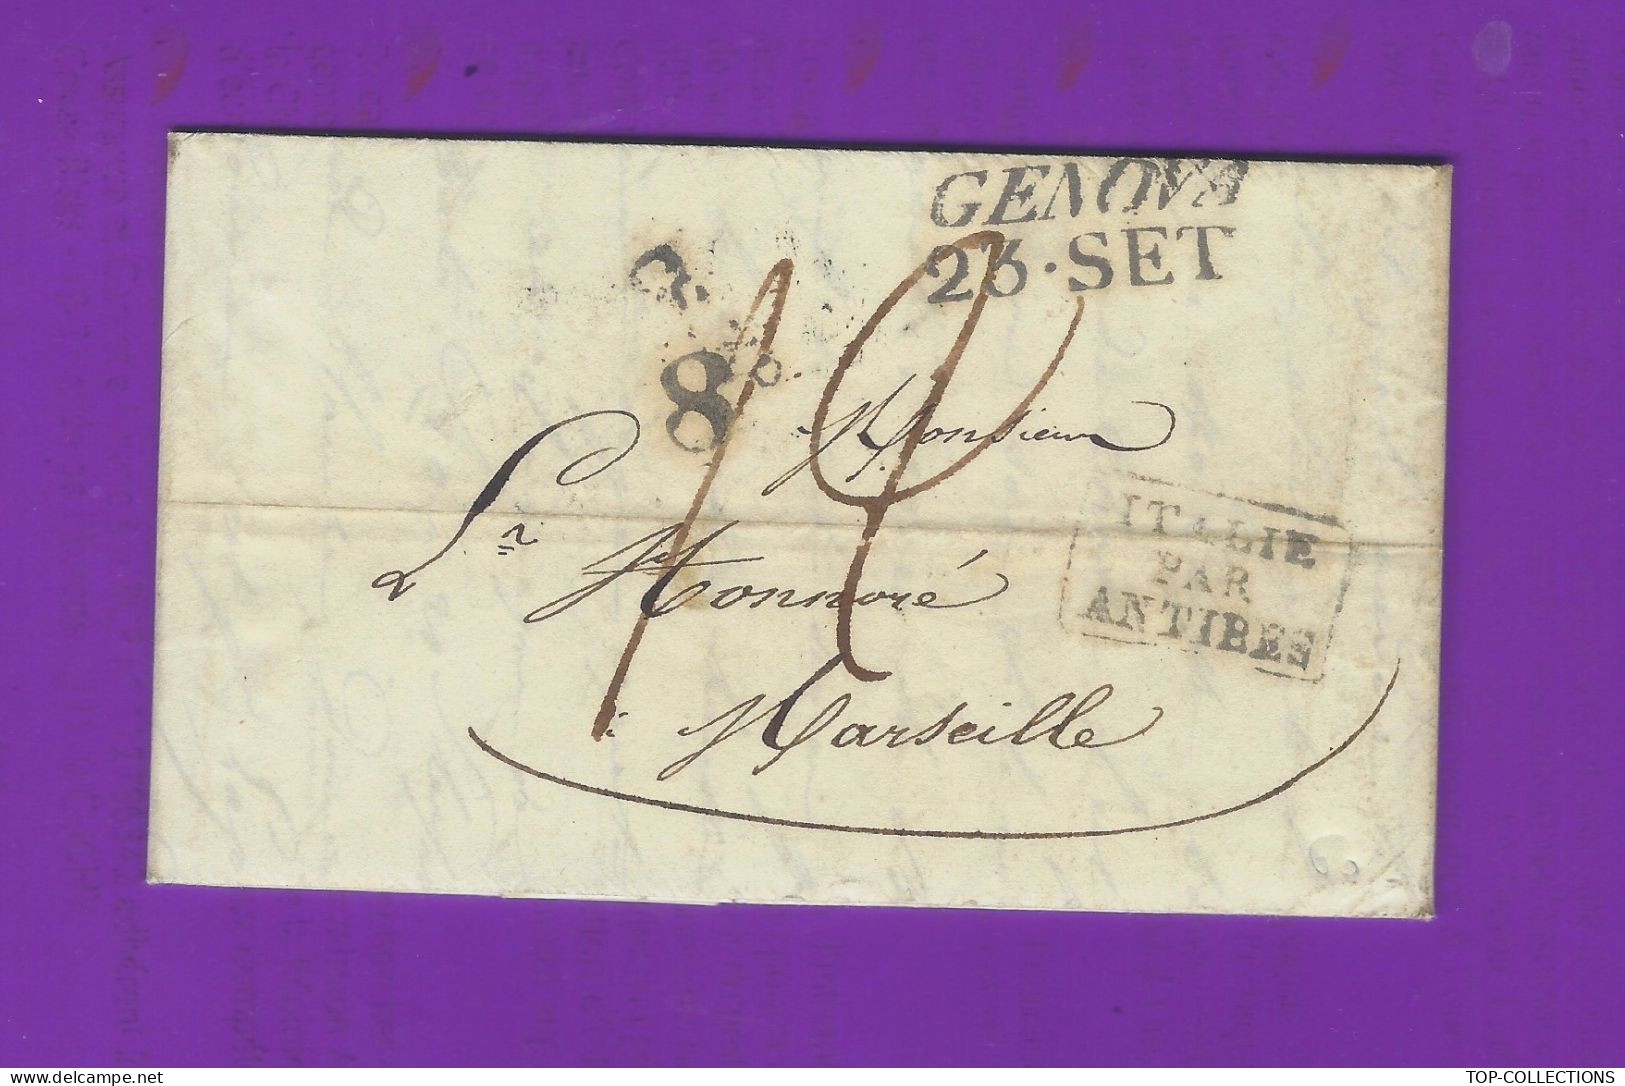 1833  RARE lettre sign. Honnoré Ainé Fils Genova Italie pour son père à Marseille NEGOCE COMMERCE NAVIGATION BEAU TEXTE